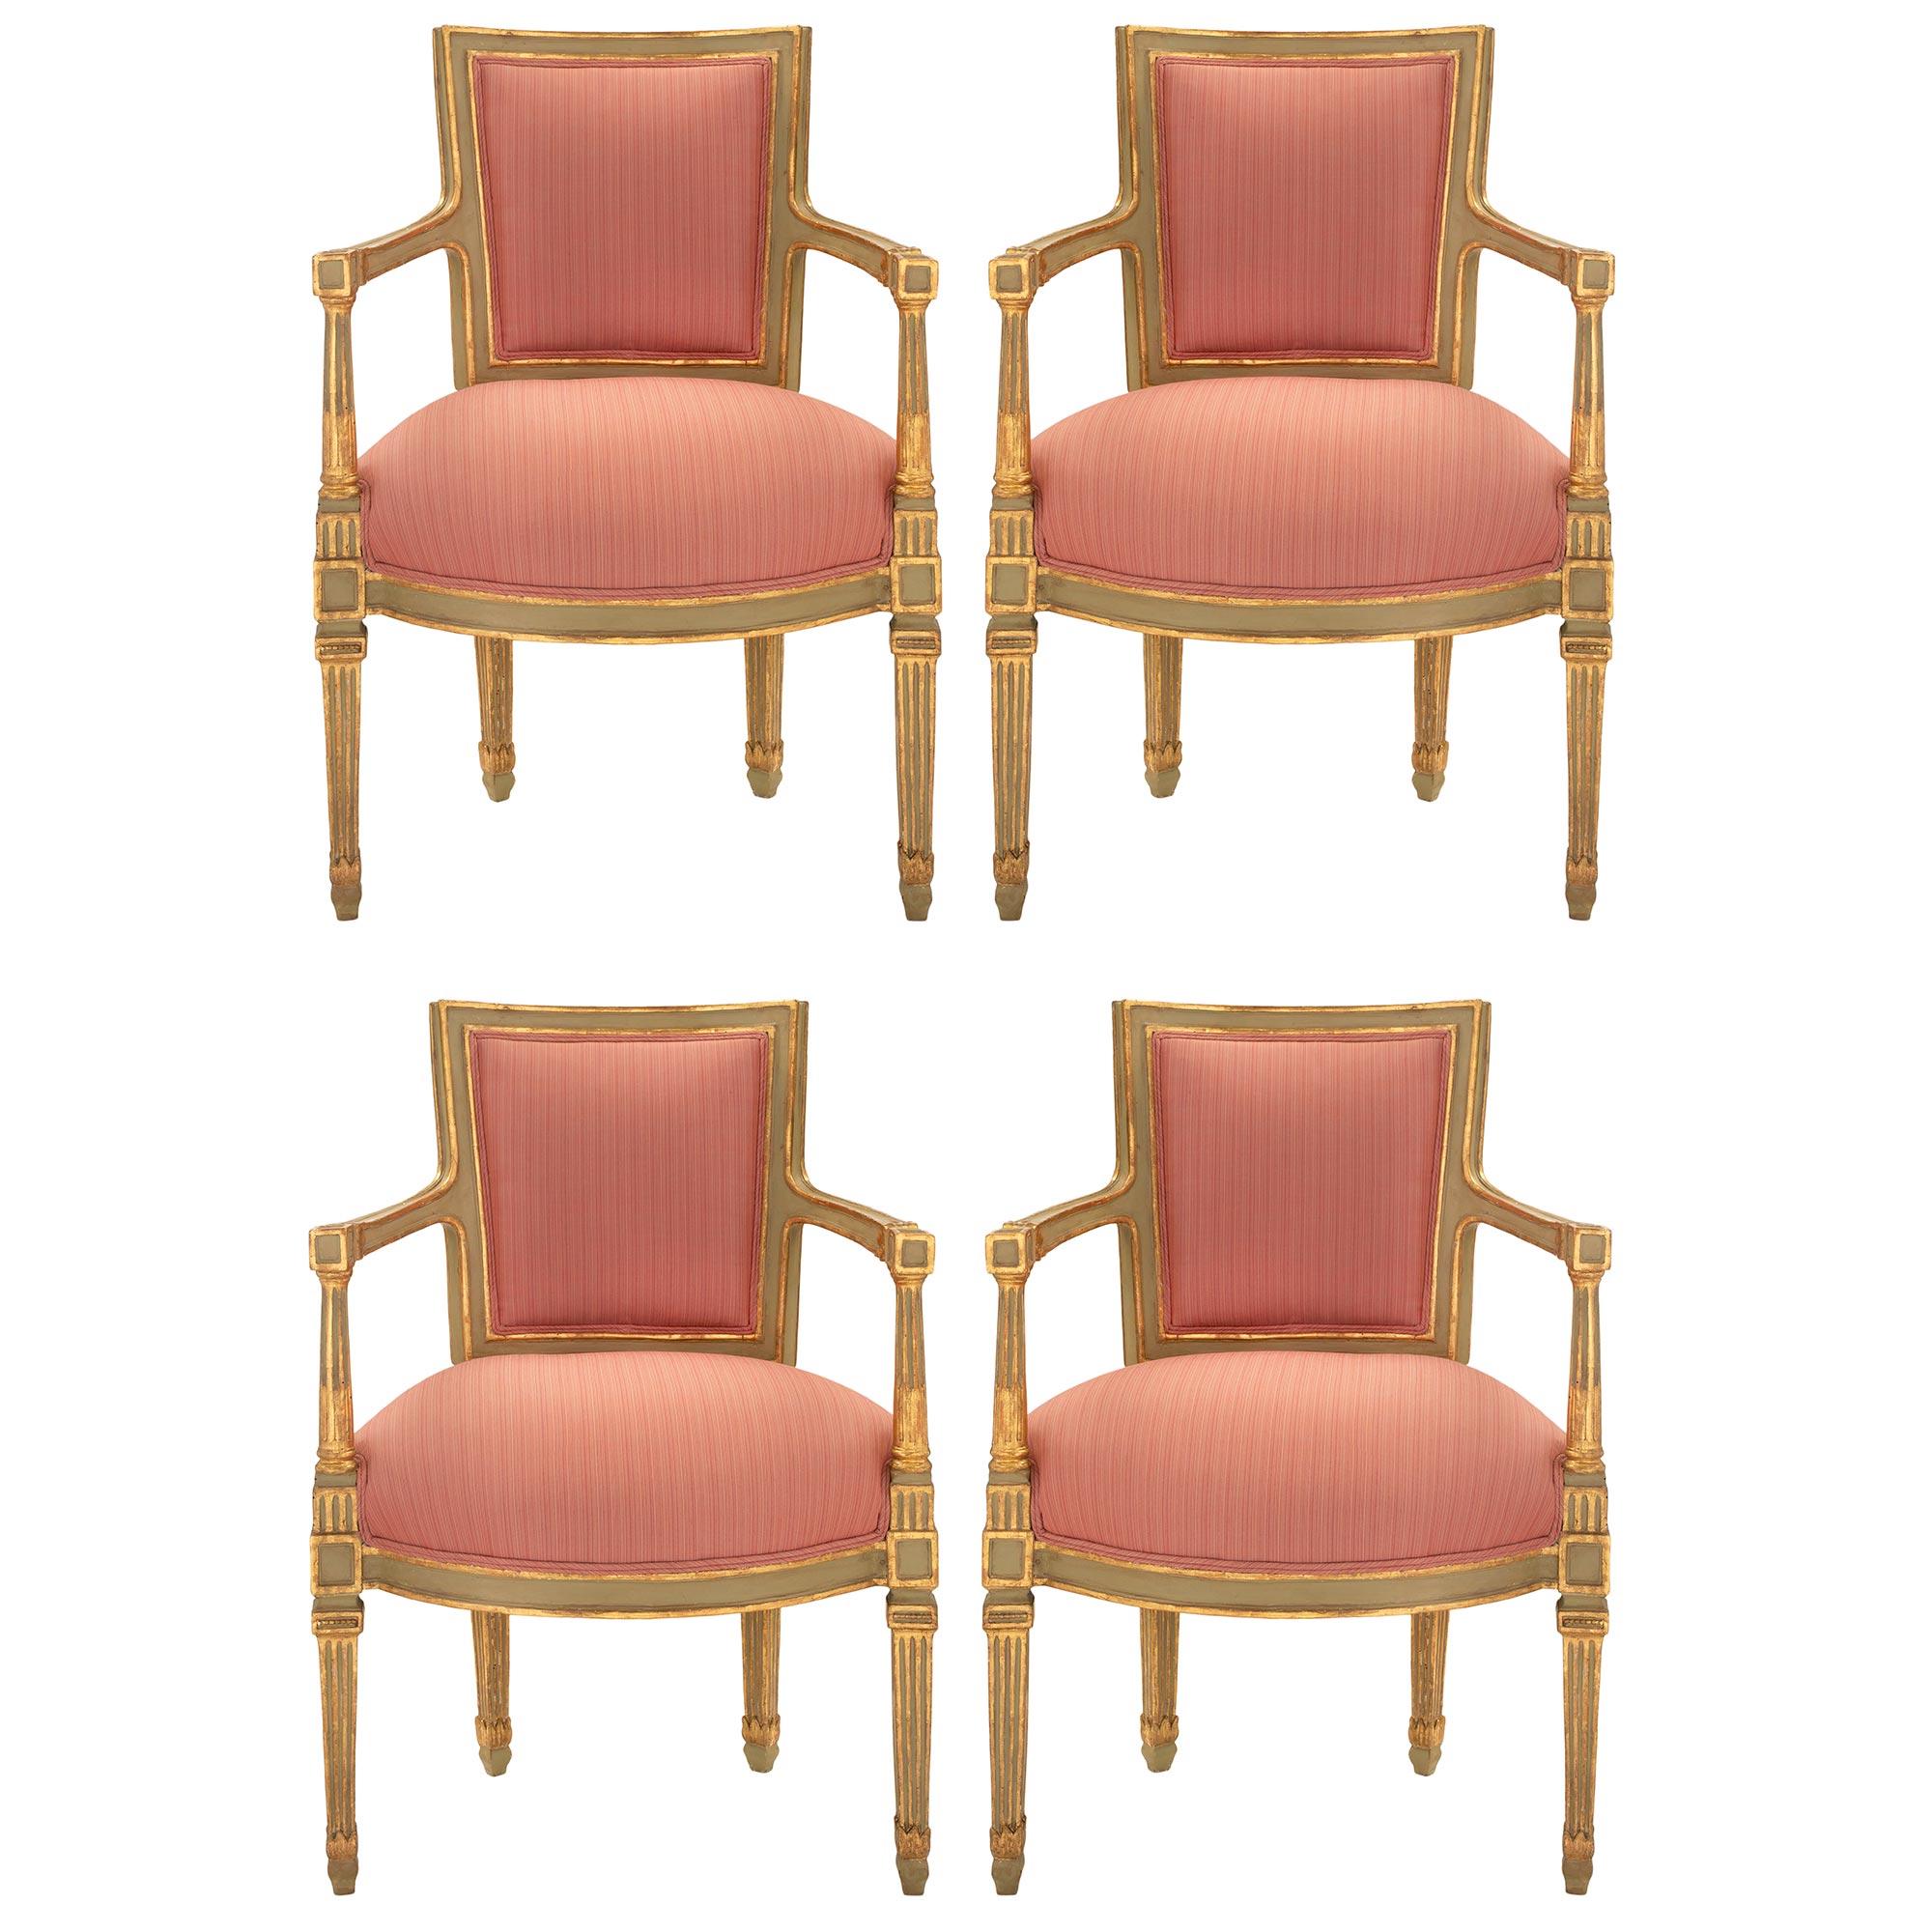 Un ensemble remarquable et complet de quatre fauteuils et de leur canapé assorti, en bois patiné et doré, d'époque Louis XVI, en provenance de Naples. Chacun d'eux est surélevé par d'élégants pieds carrés fuselés et cannelés en bois doré et patiné.